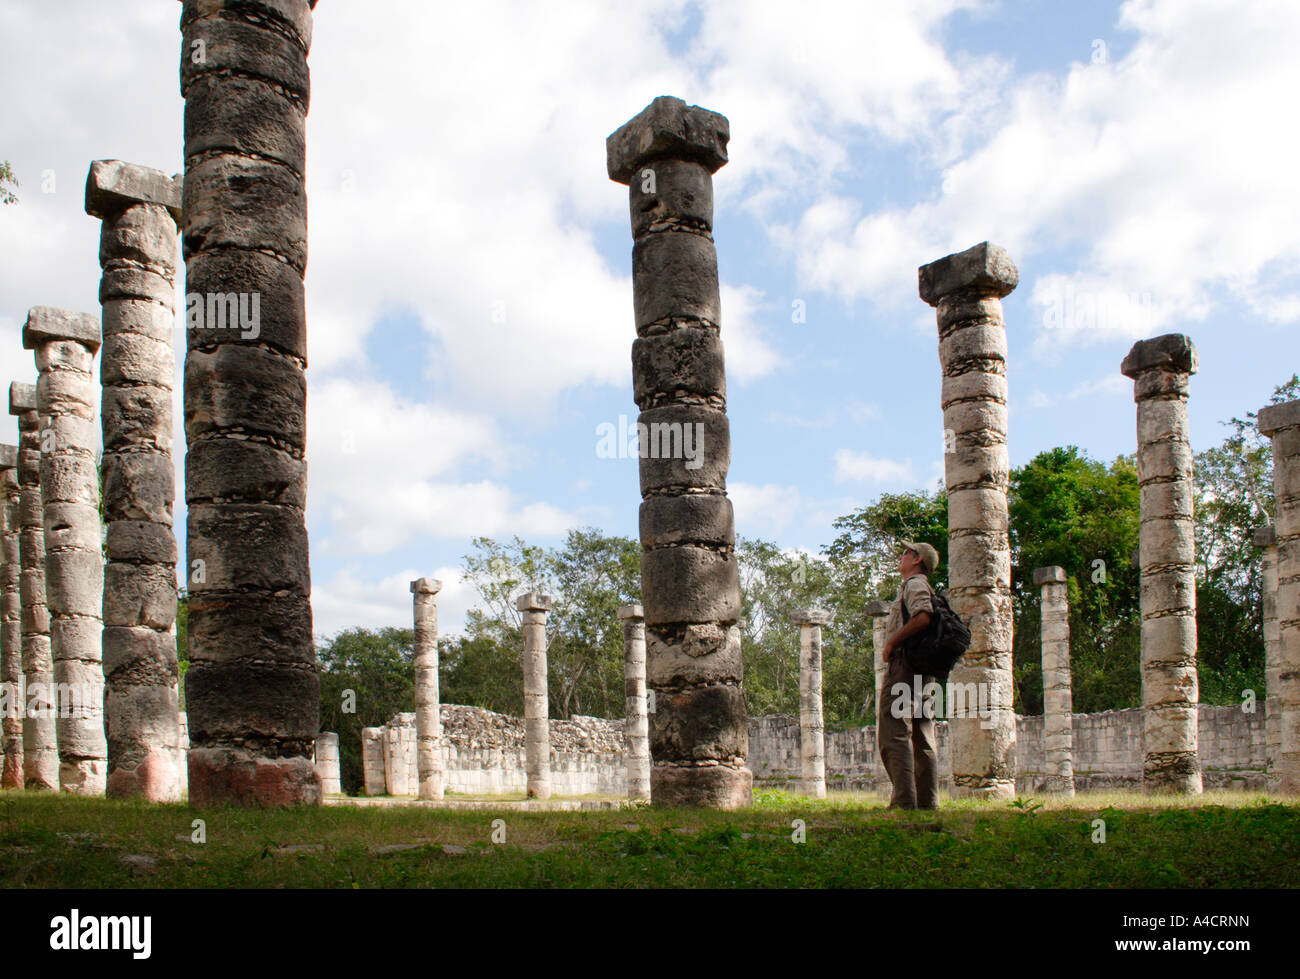 Chichen Itza, Maya-Ruine Ausgrabungsstätte in North Central Yucatan zeigt toltekischen Einfluss von Zentral-Mexiko Stockfoto